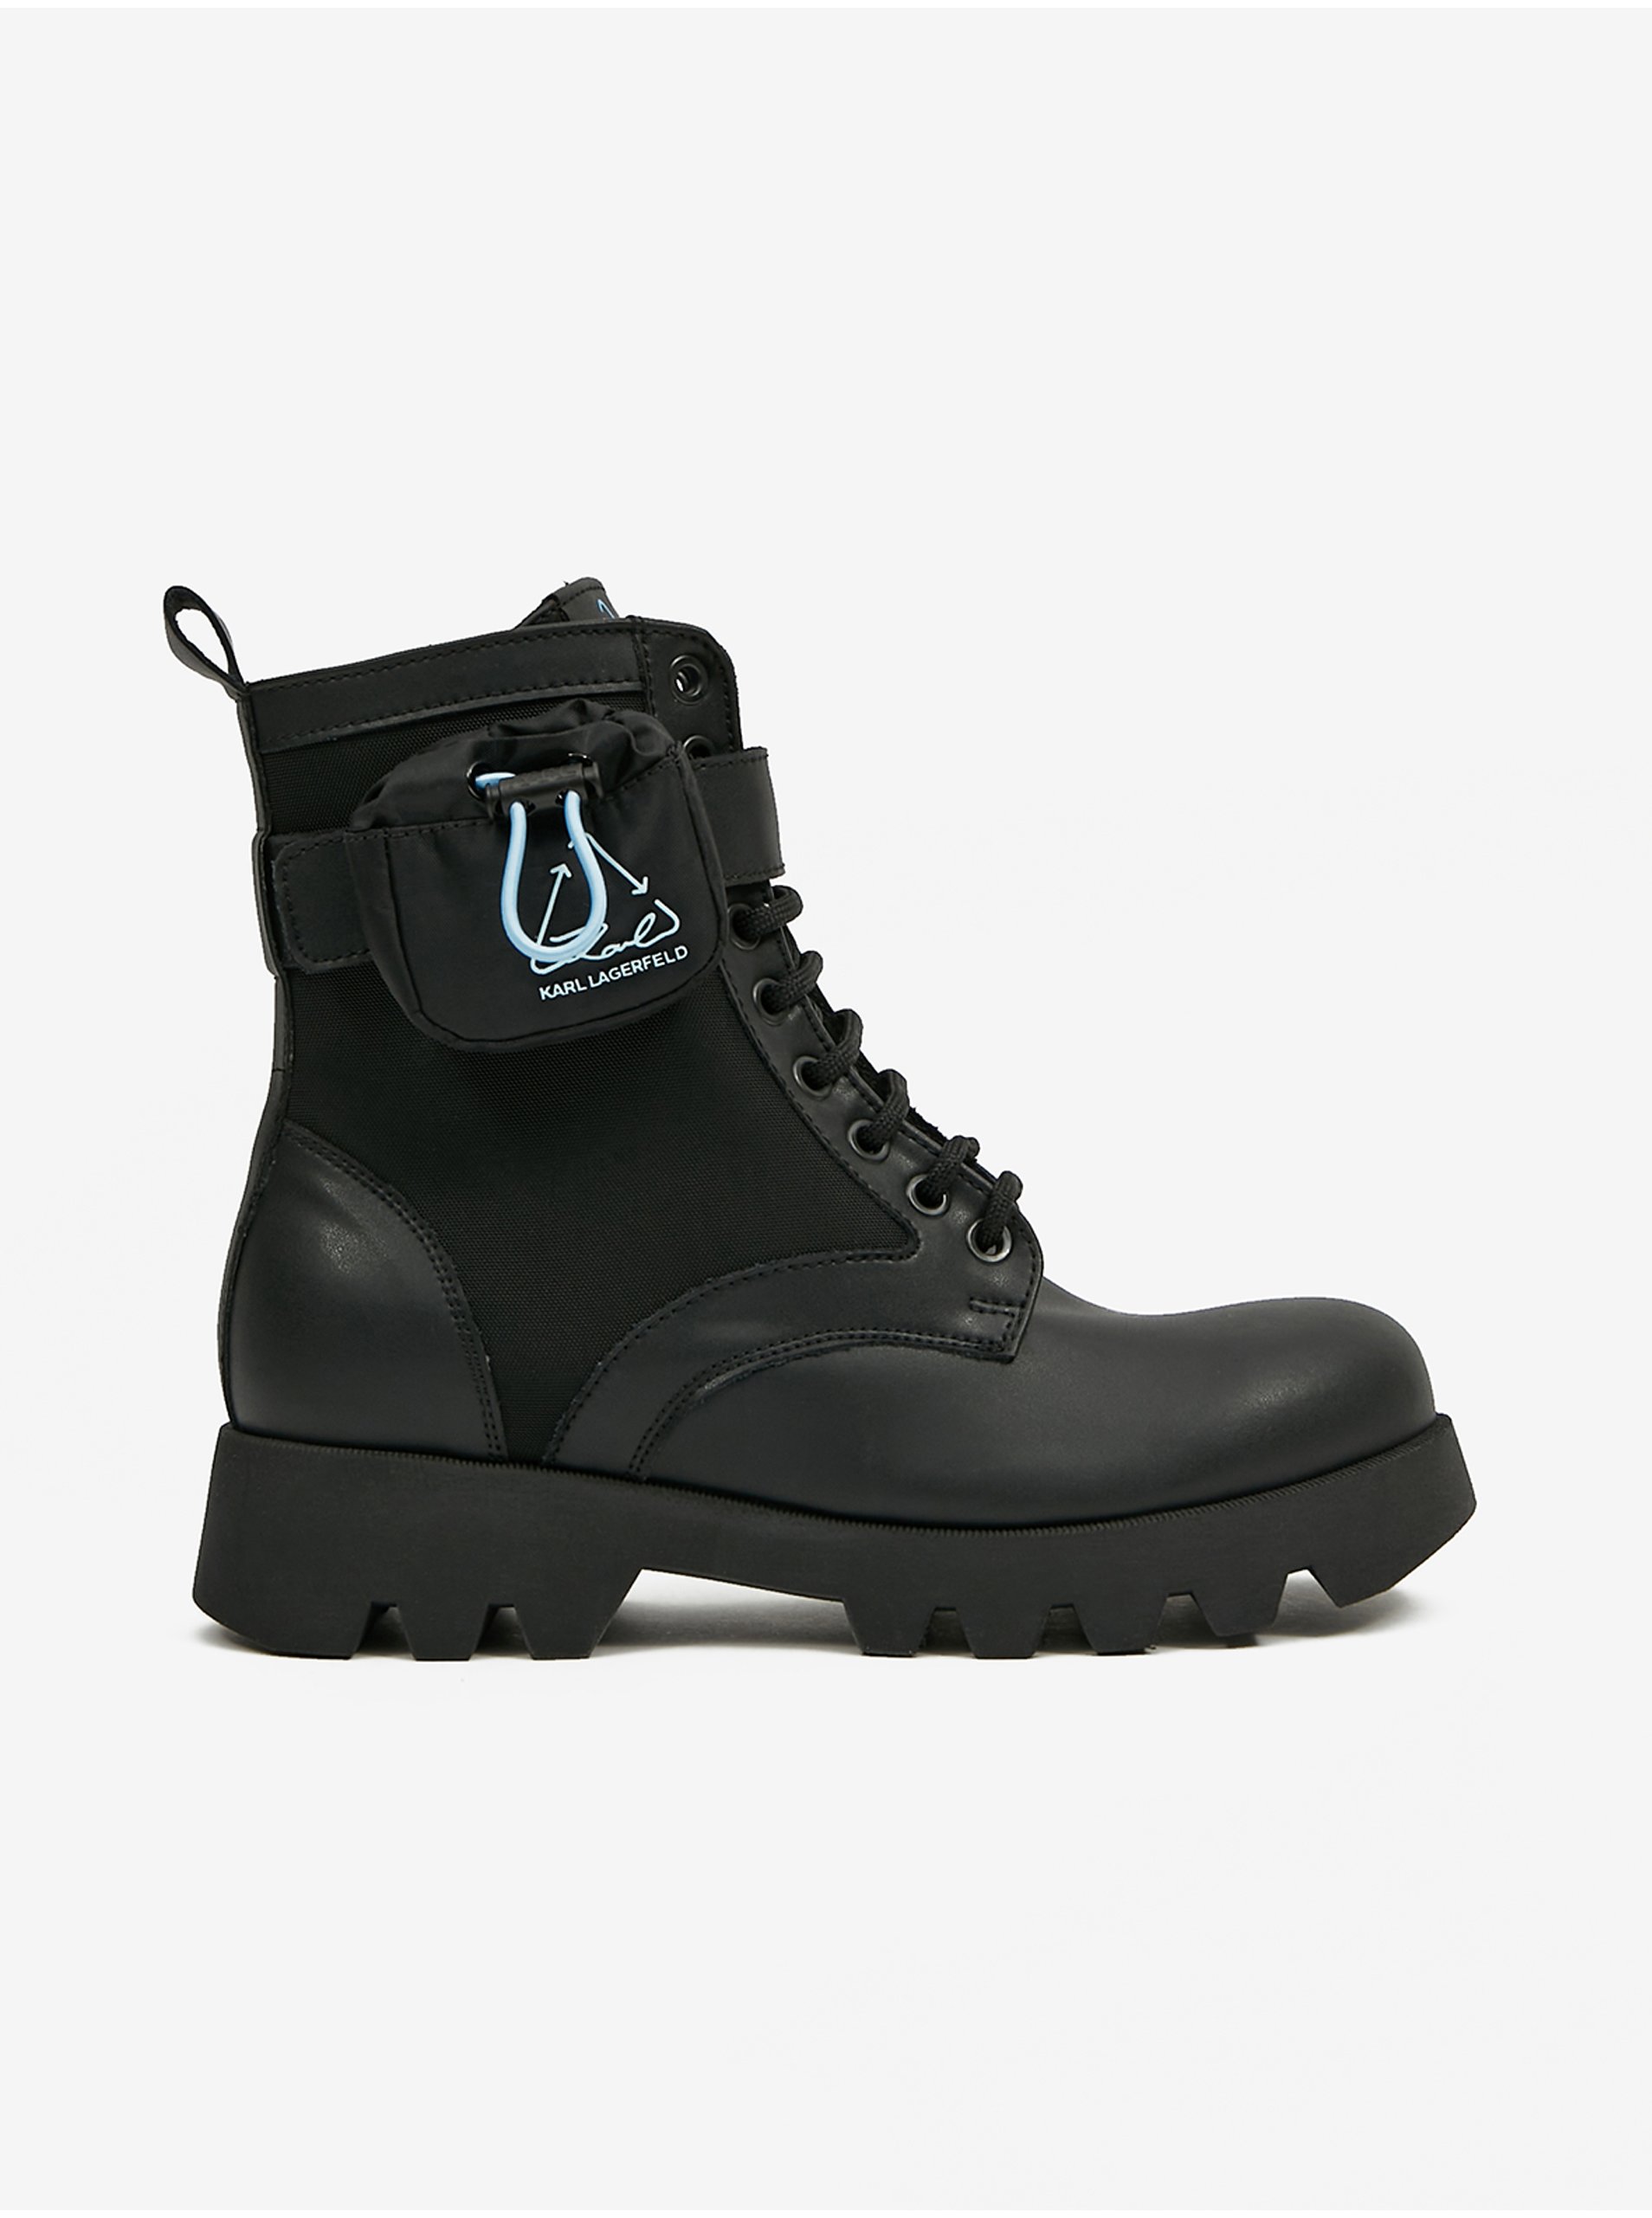 E-shop Čierne dámske kožené členkové topánky KARL LAGERFELD Terra Firma